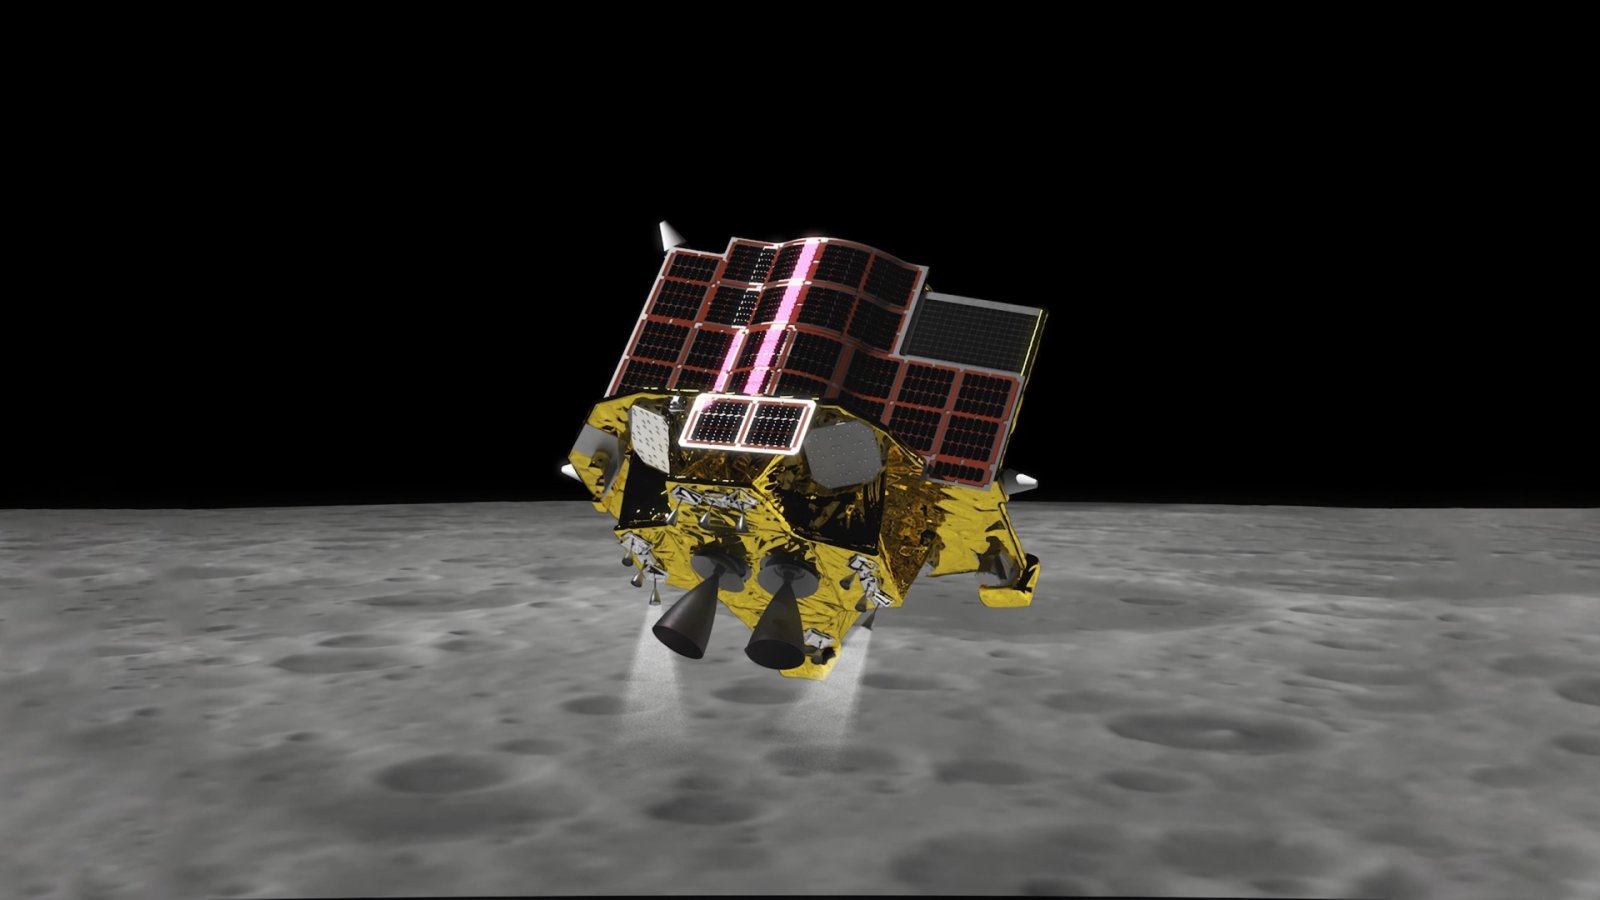 ญี่ปุ่นทำภารกิจ SLIM นำยานลงจอดบนดวงจันทร์ได้สำเร็จเป็นประเทศที่ 5 ของโลก